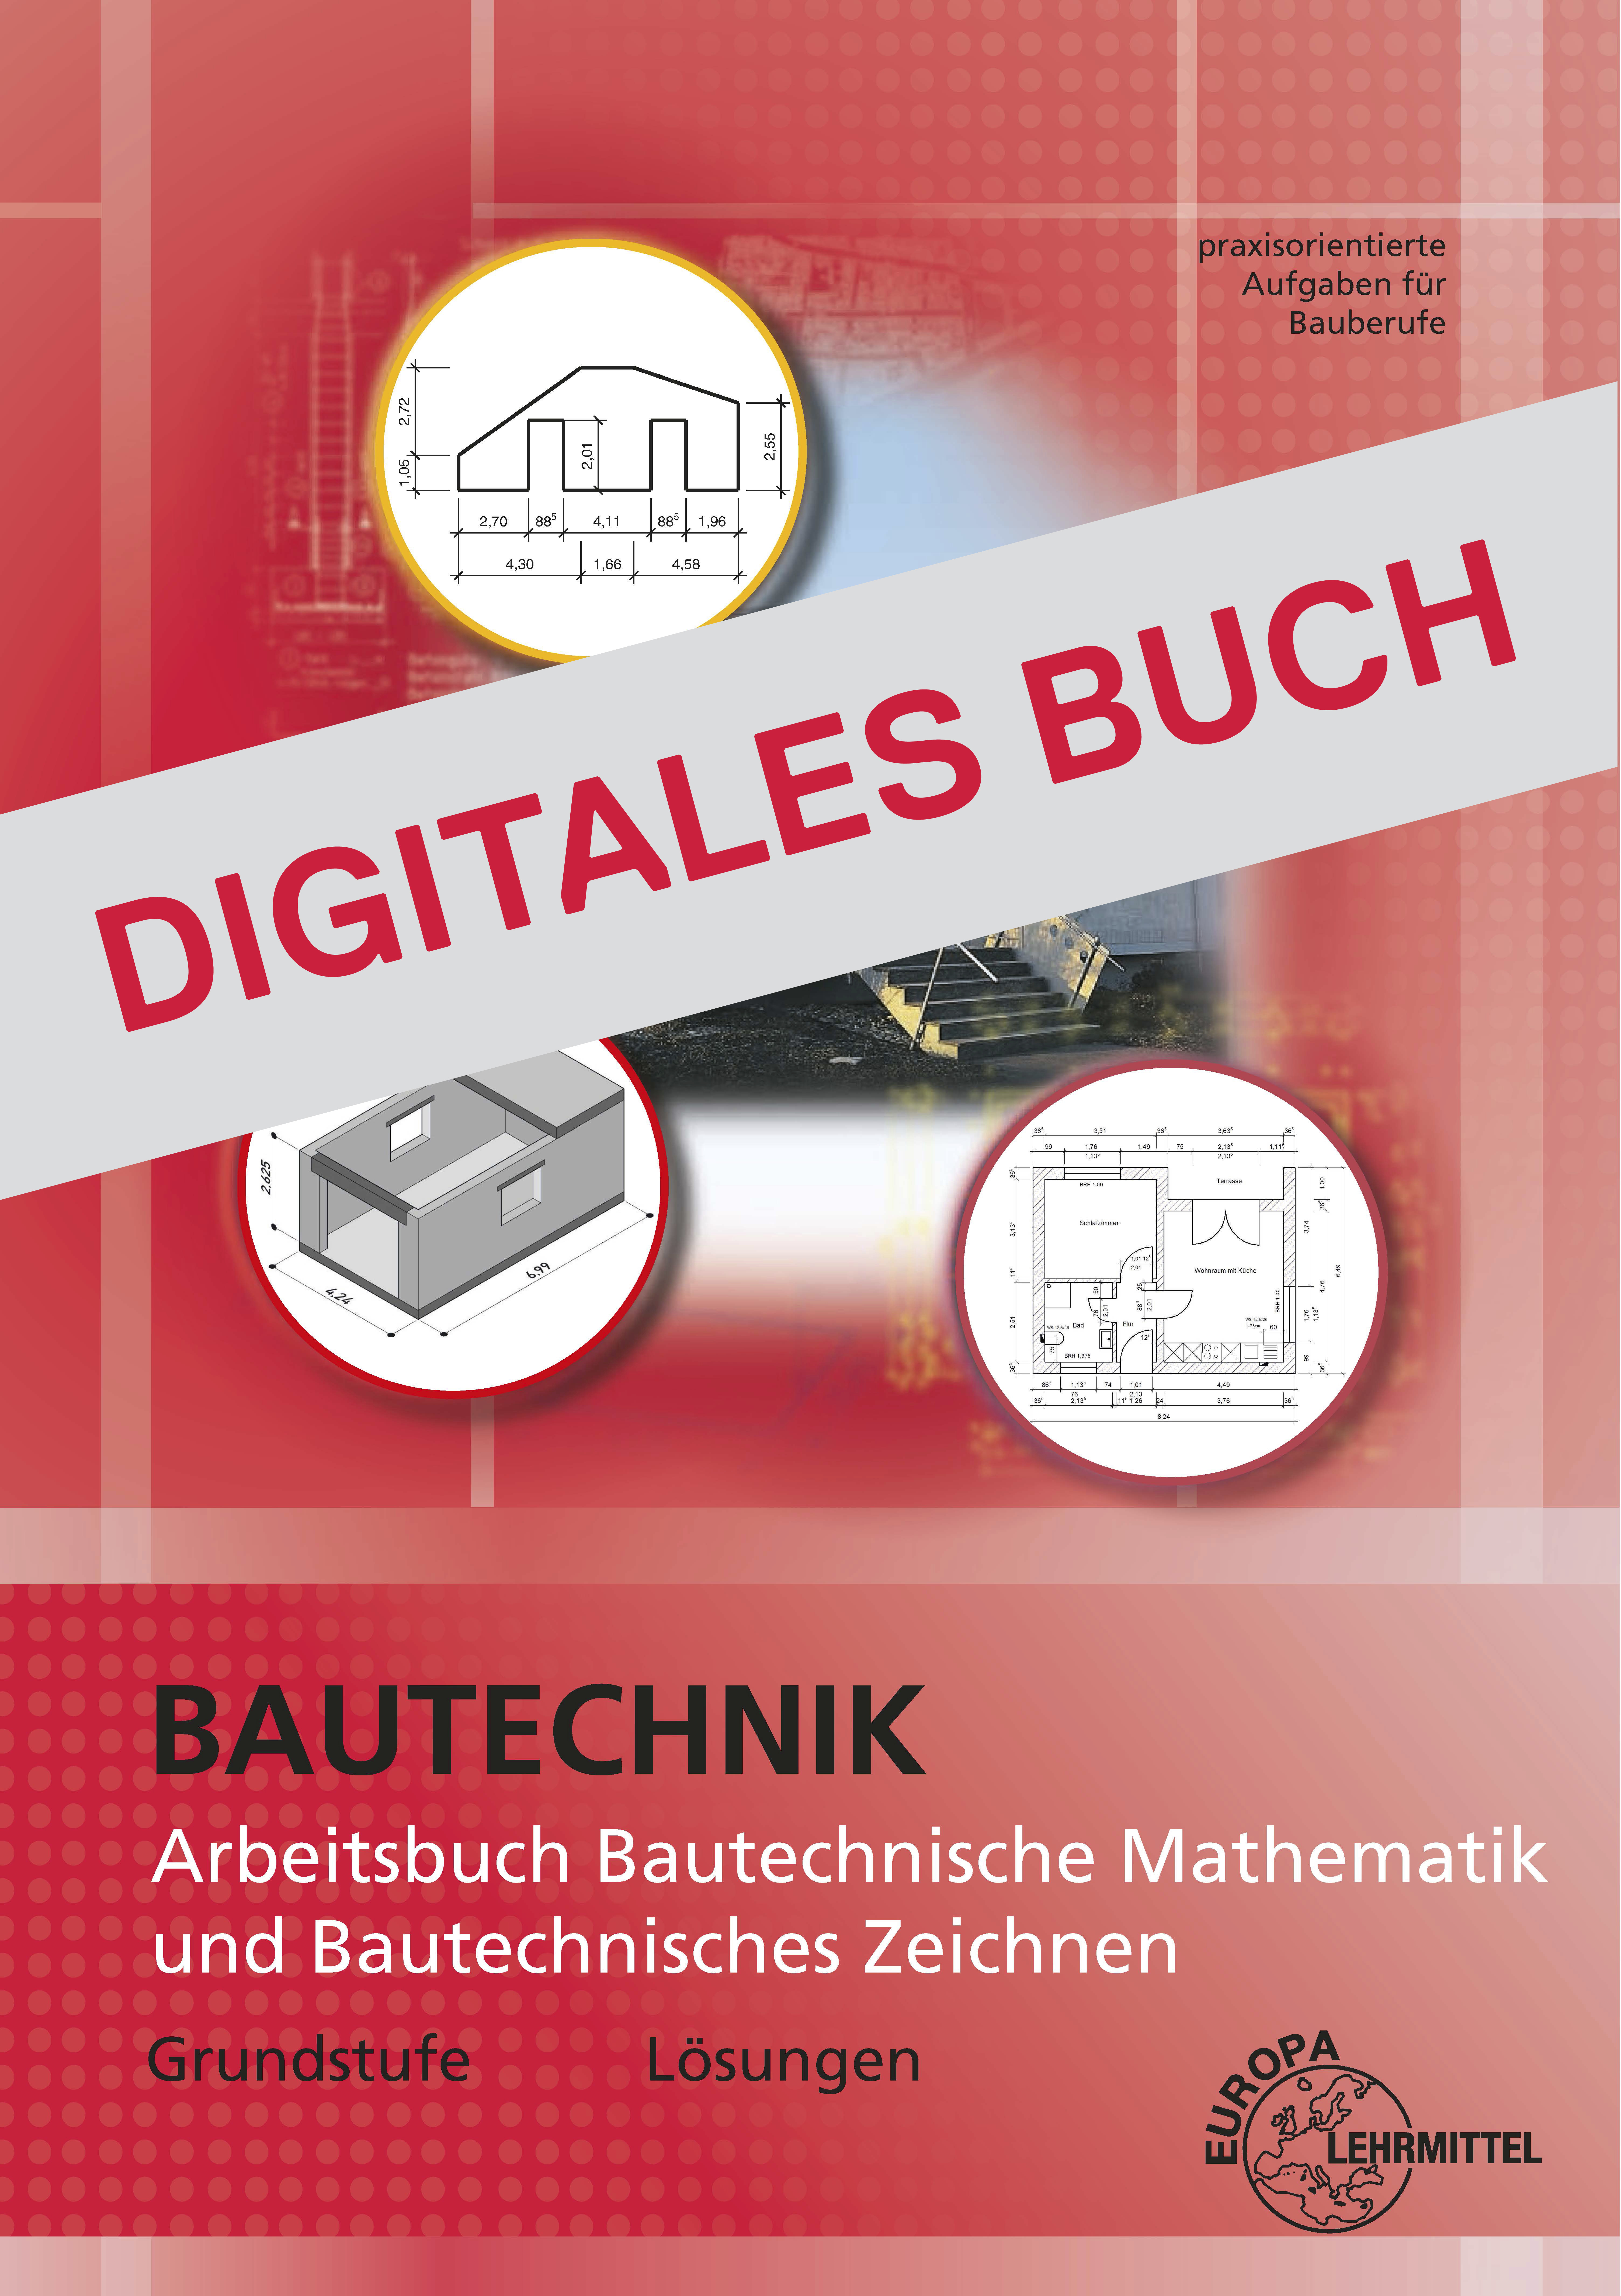 Lösungen Aufgabenheft für bautechnische Berufe Digitales Buch